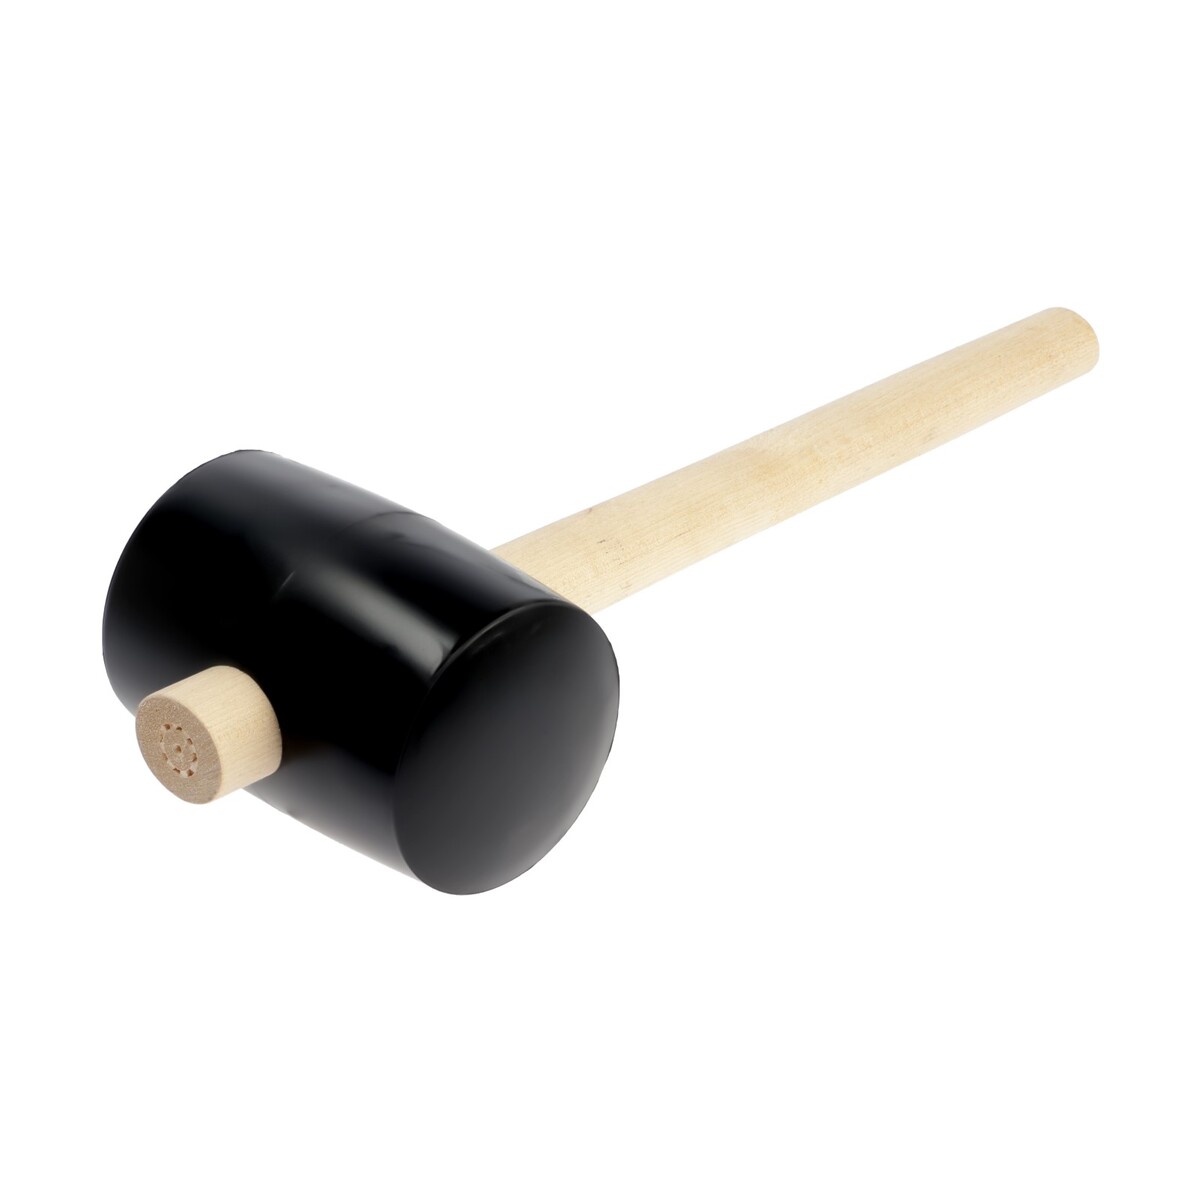 Киянка лом, деревянная рукоятка, черная резина, 90 мм, 1000 г киянка тундра деревянная рукоятка черная резина 450 г